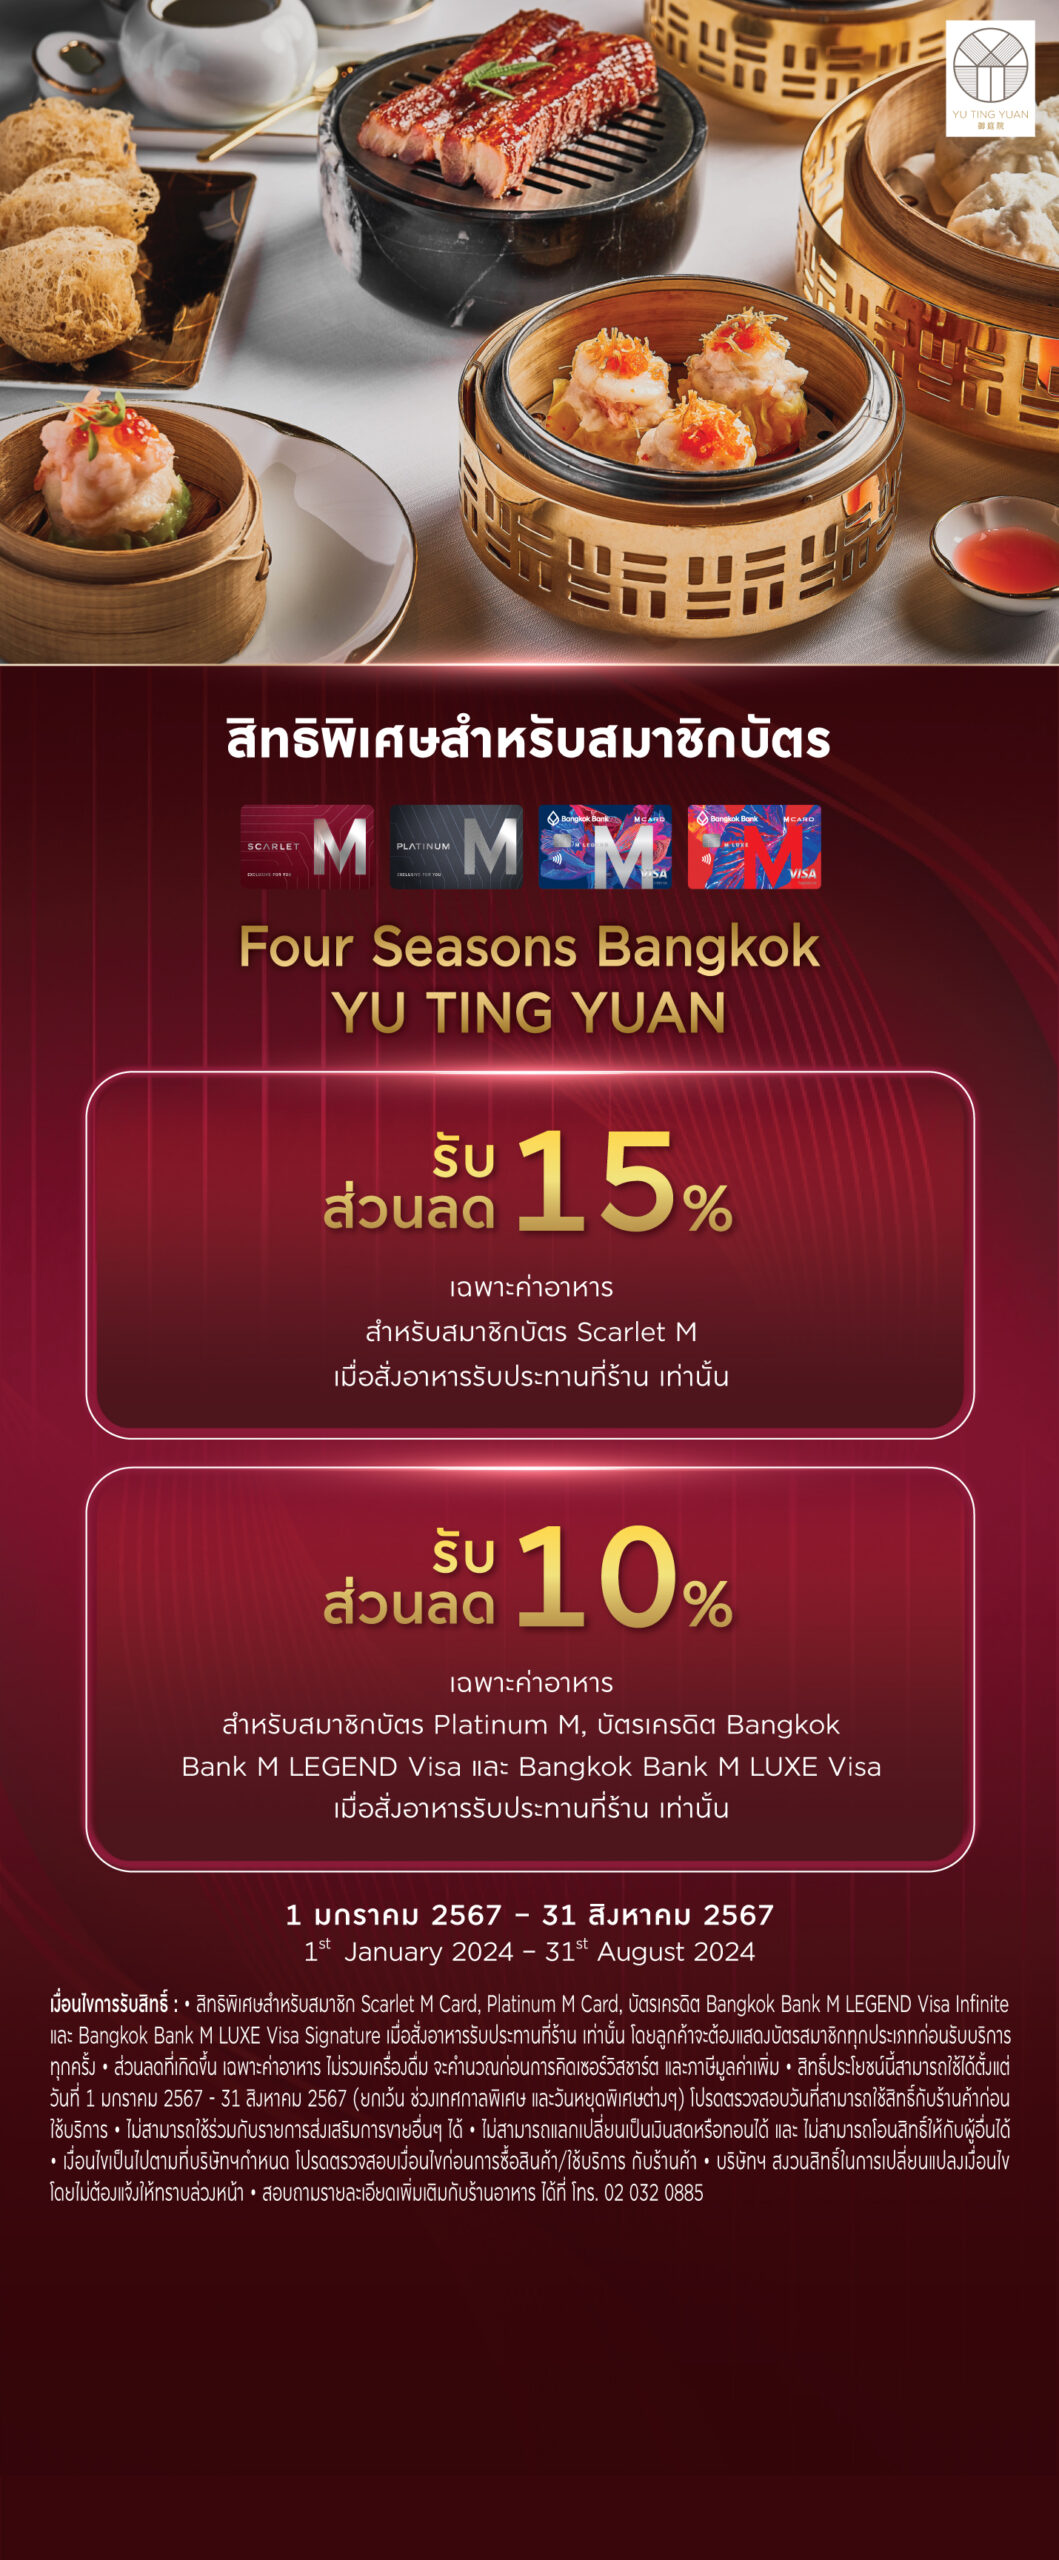 YU TING YUAN - Four Seasons Bangkok - Mcard